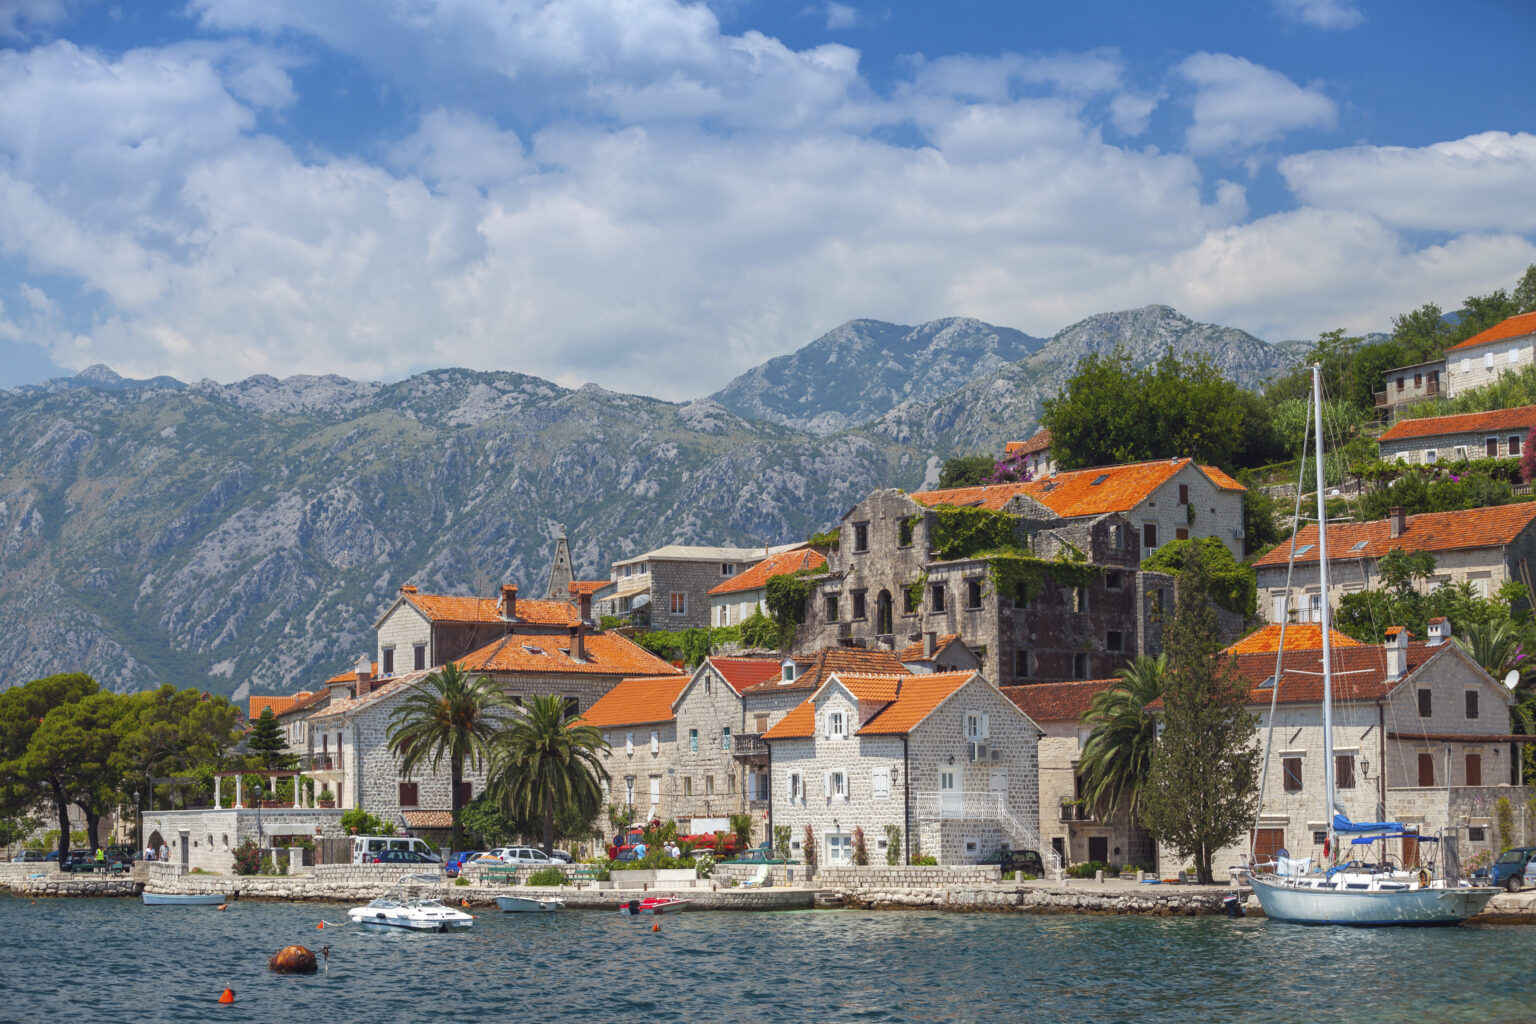 Герцег-нови в черногории (herceg novi) 2023: достопримечательности, фото, вид на которский залив. как добраться до херцег-нови на автобусе